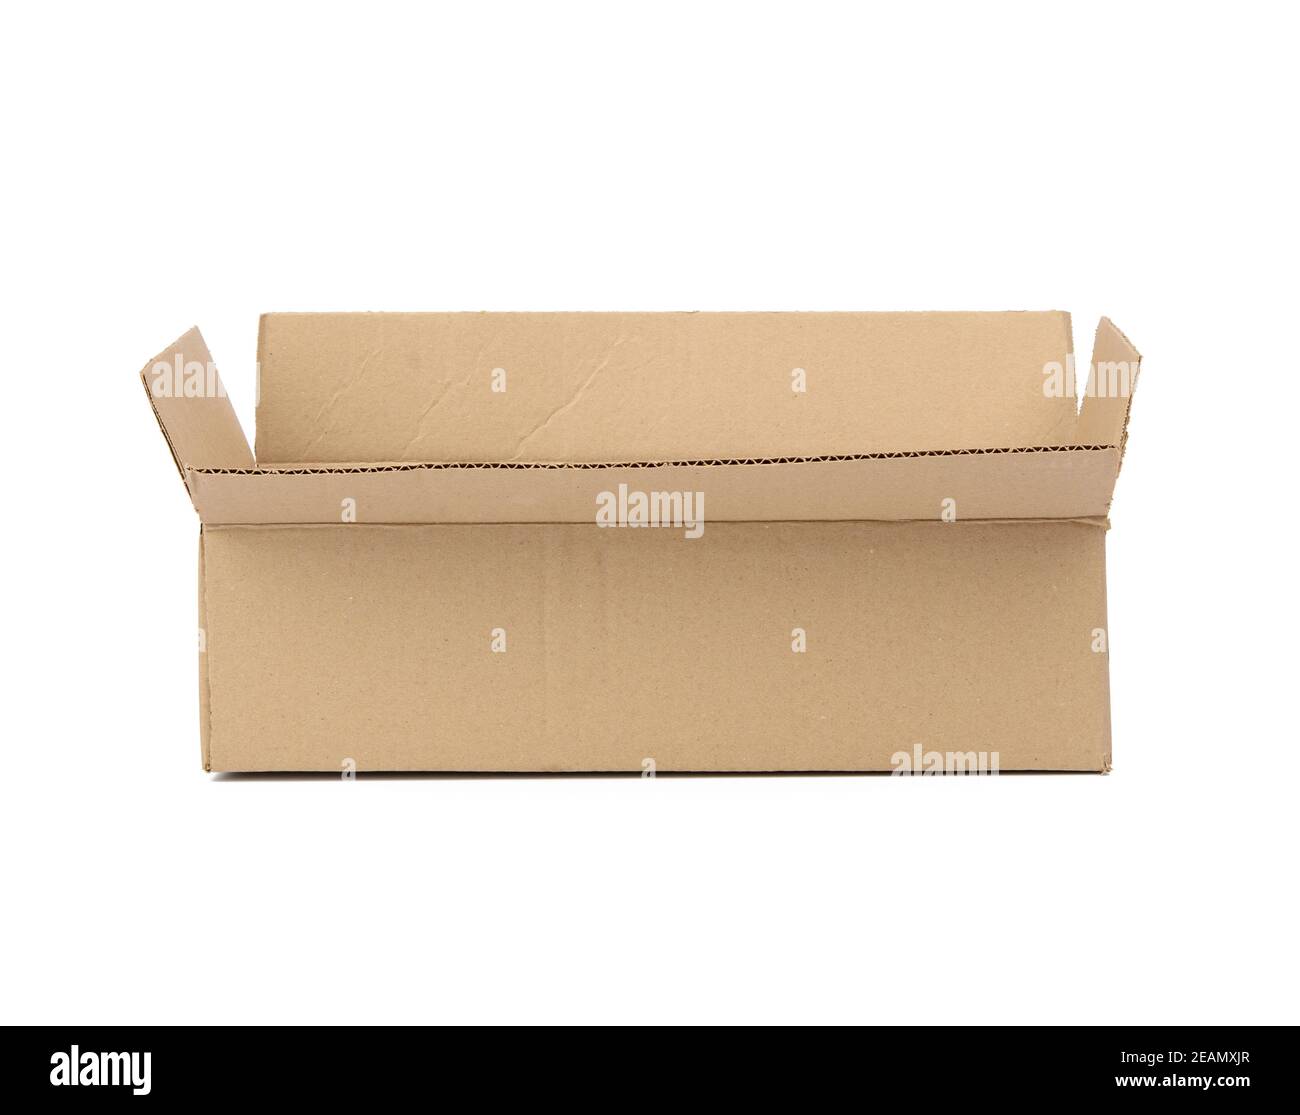 caja de cartón abierta de papel marrón corrugado Fotografía de Alamy